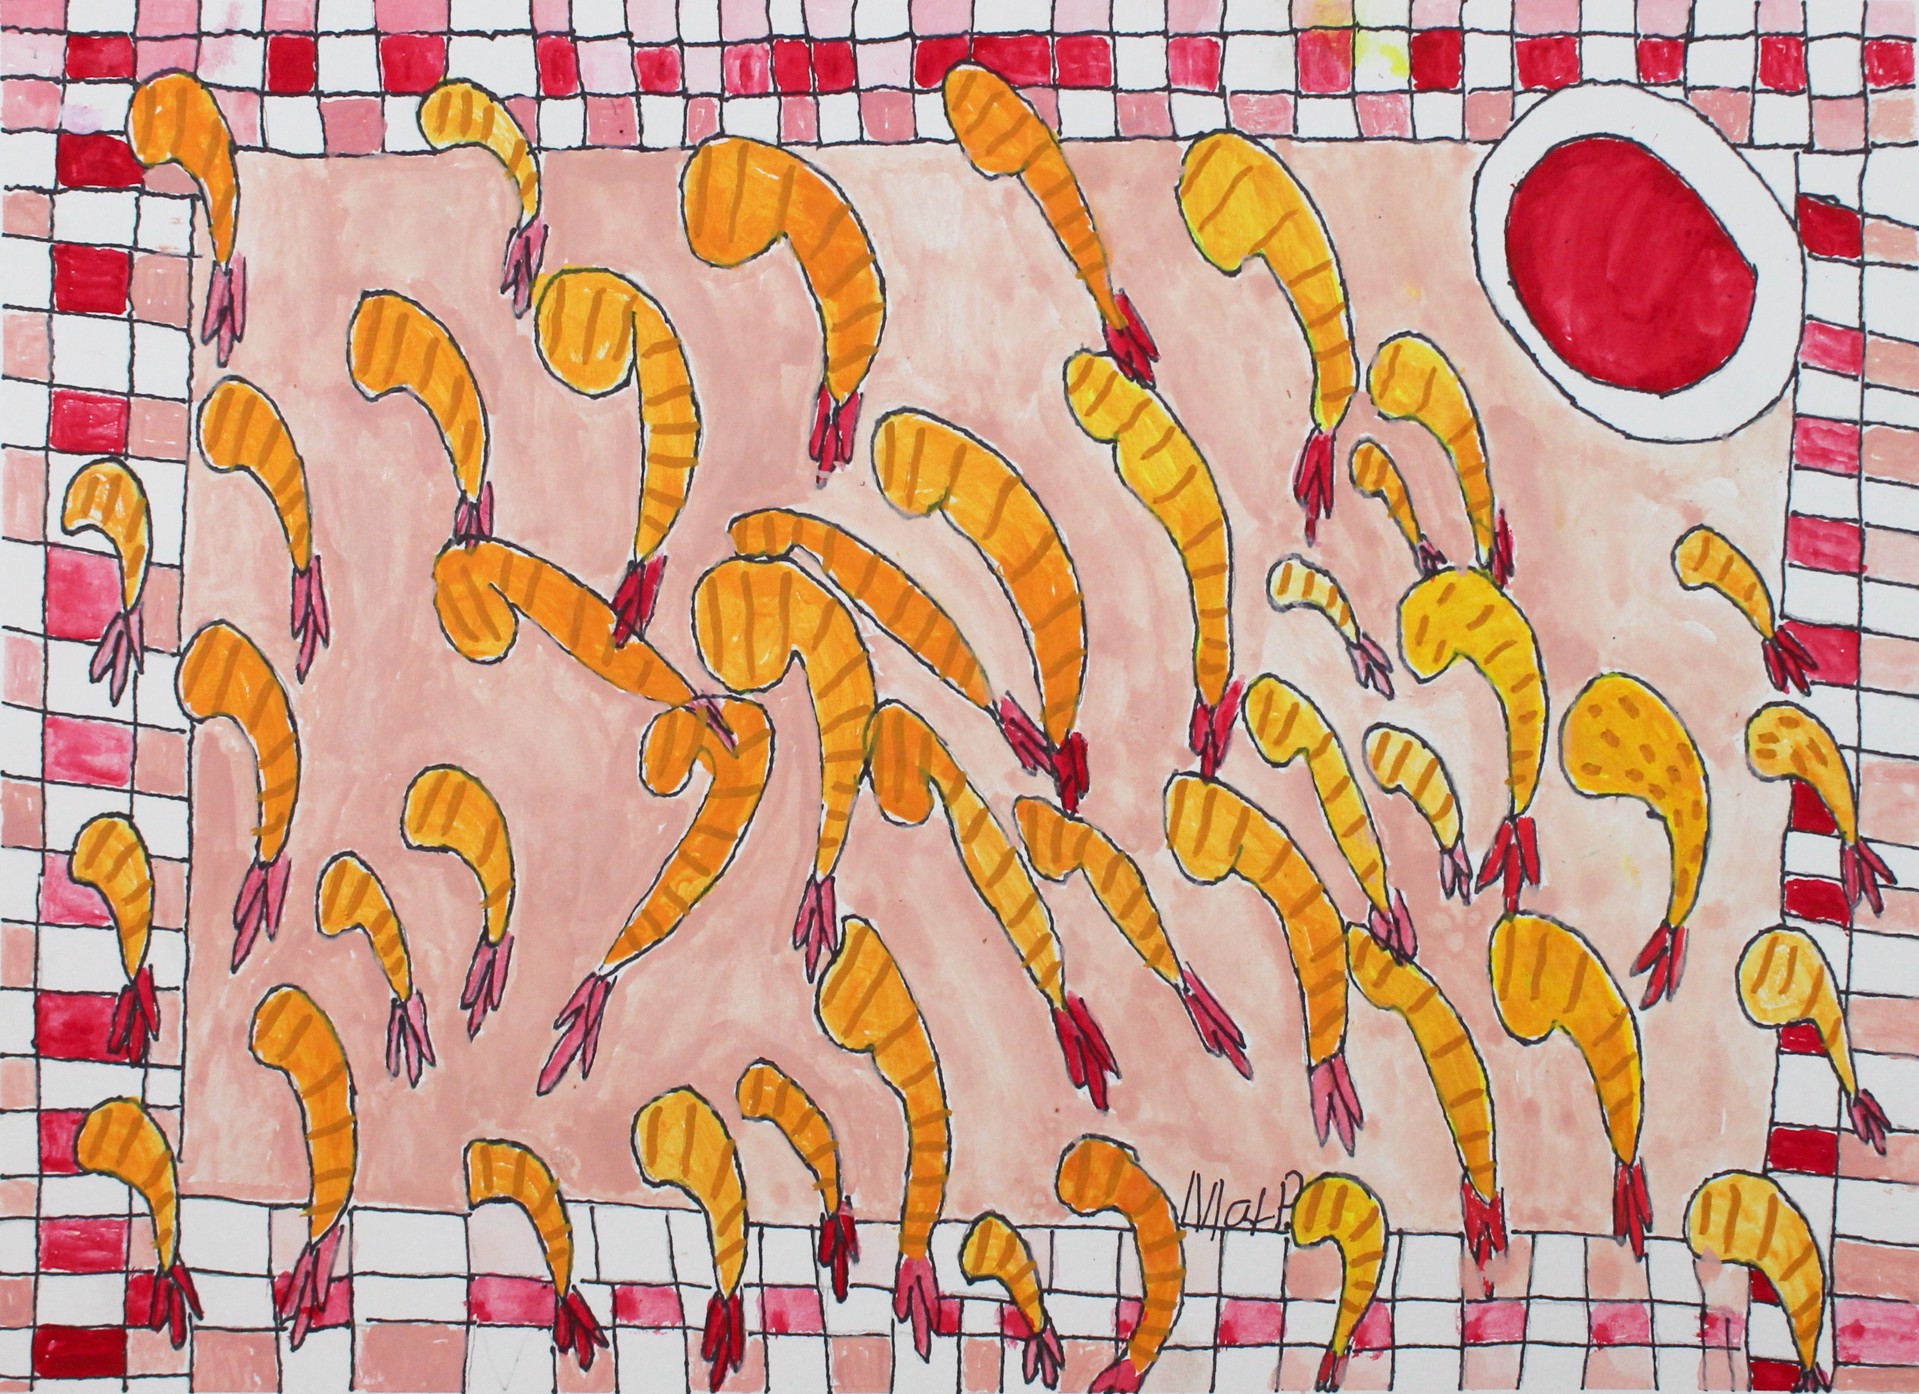 Tiger Shrimp by Max Poznerzon